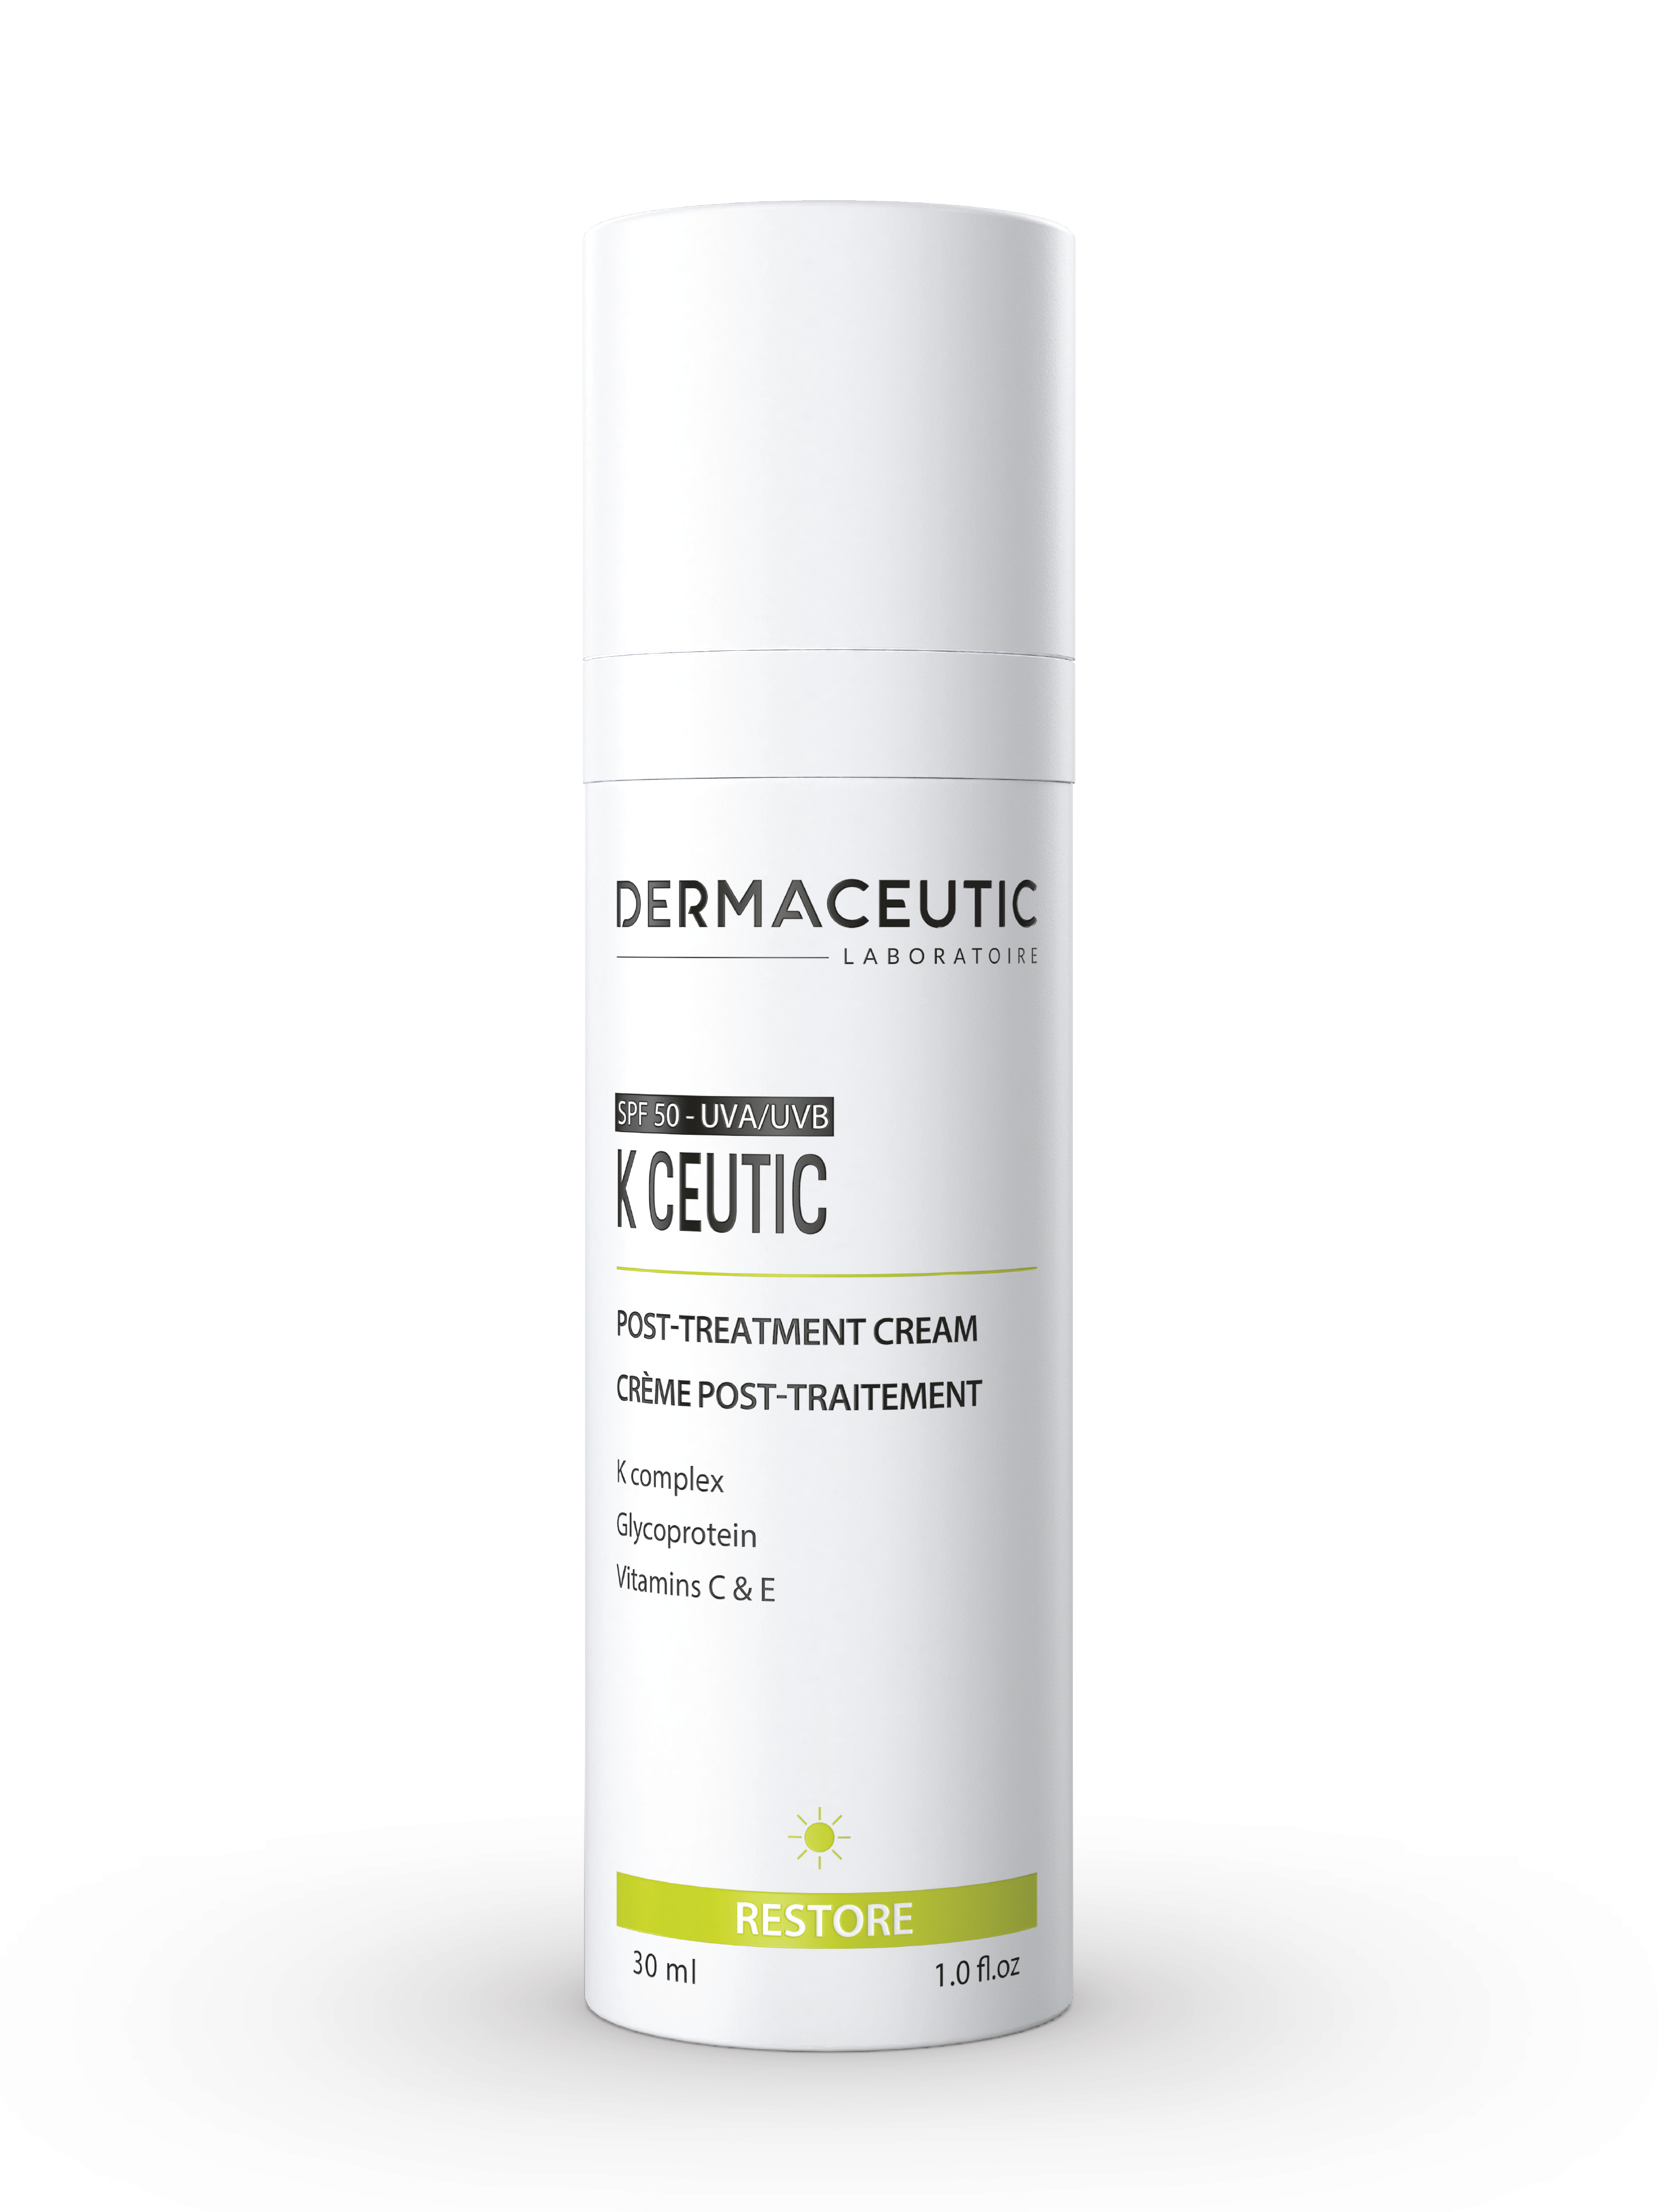 Dermaceutic K Ceutic Post-Treatment Cream, 30 ml